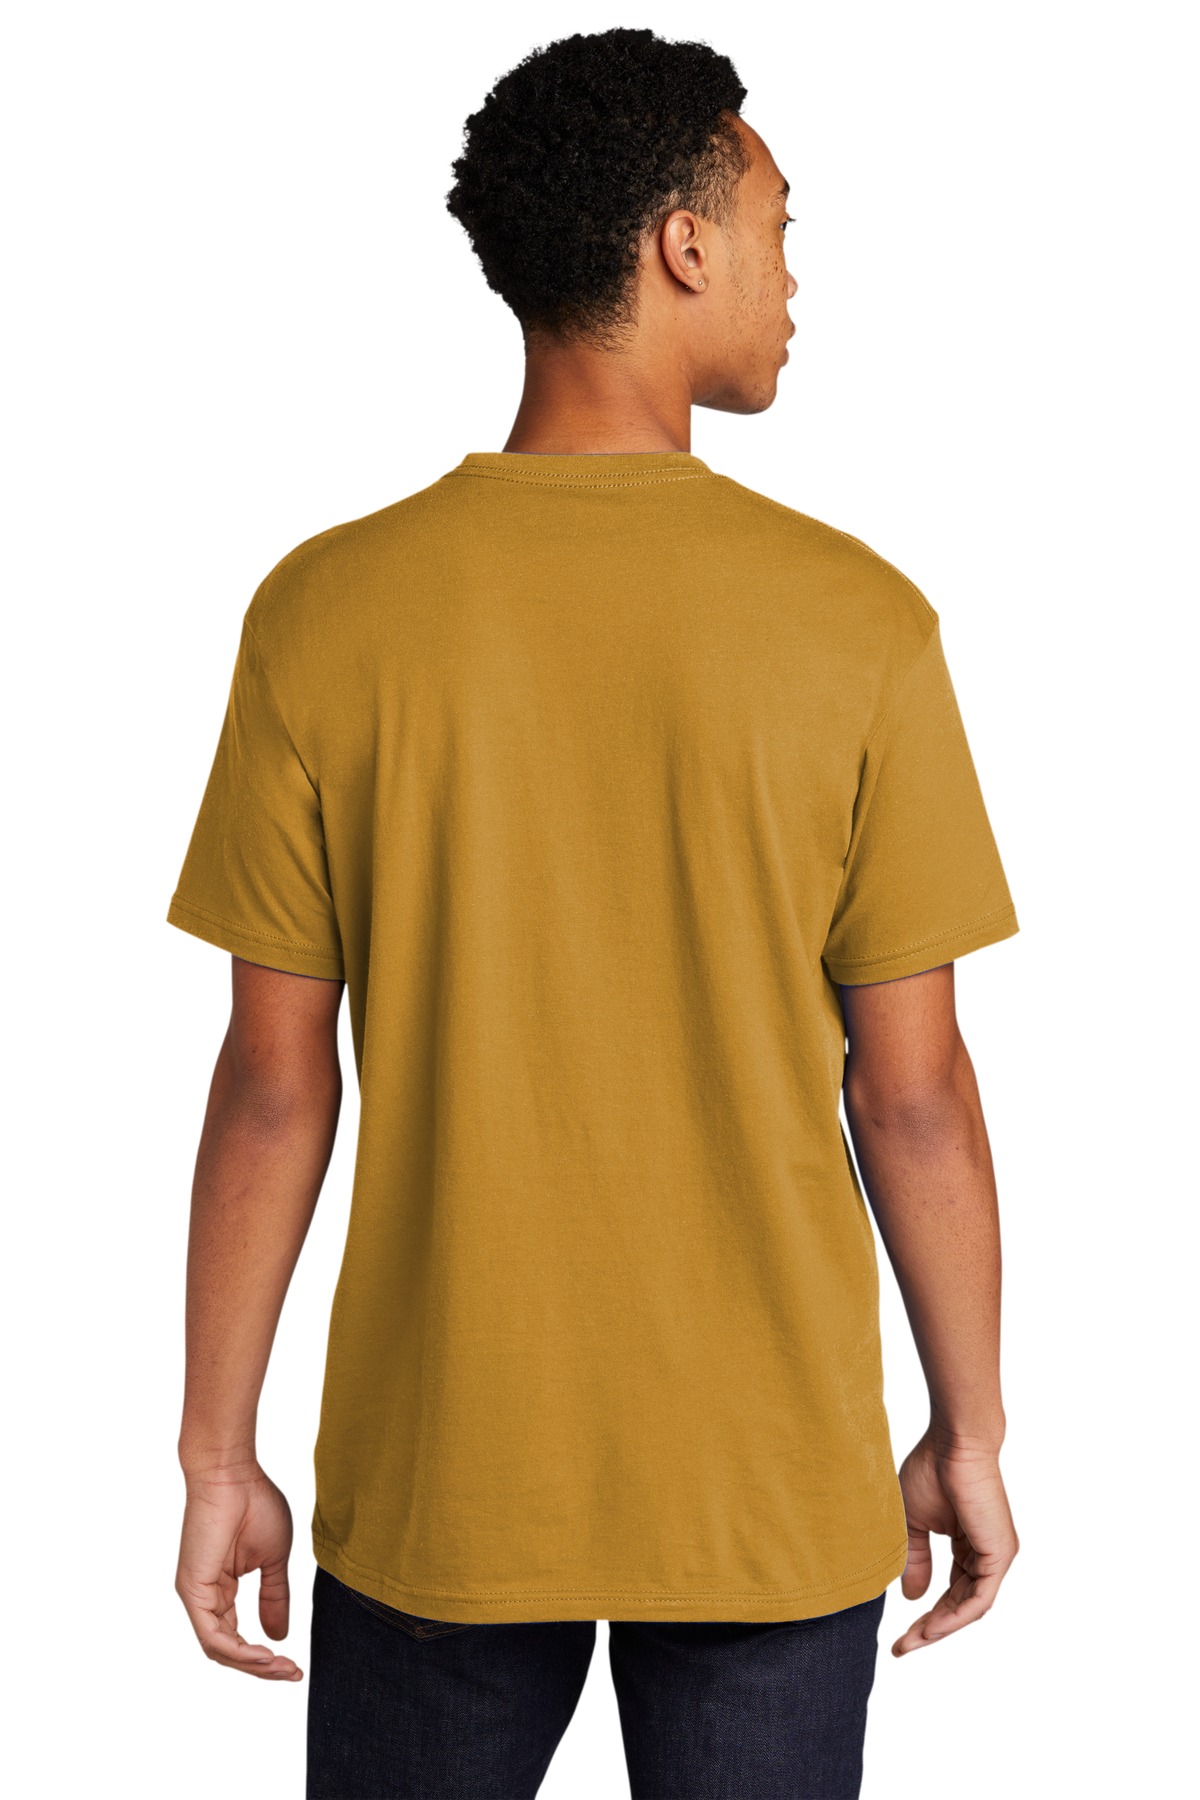 Next Level 3600 Unisex Cotton T Shirt - Dark Chocolate - S